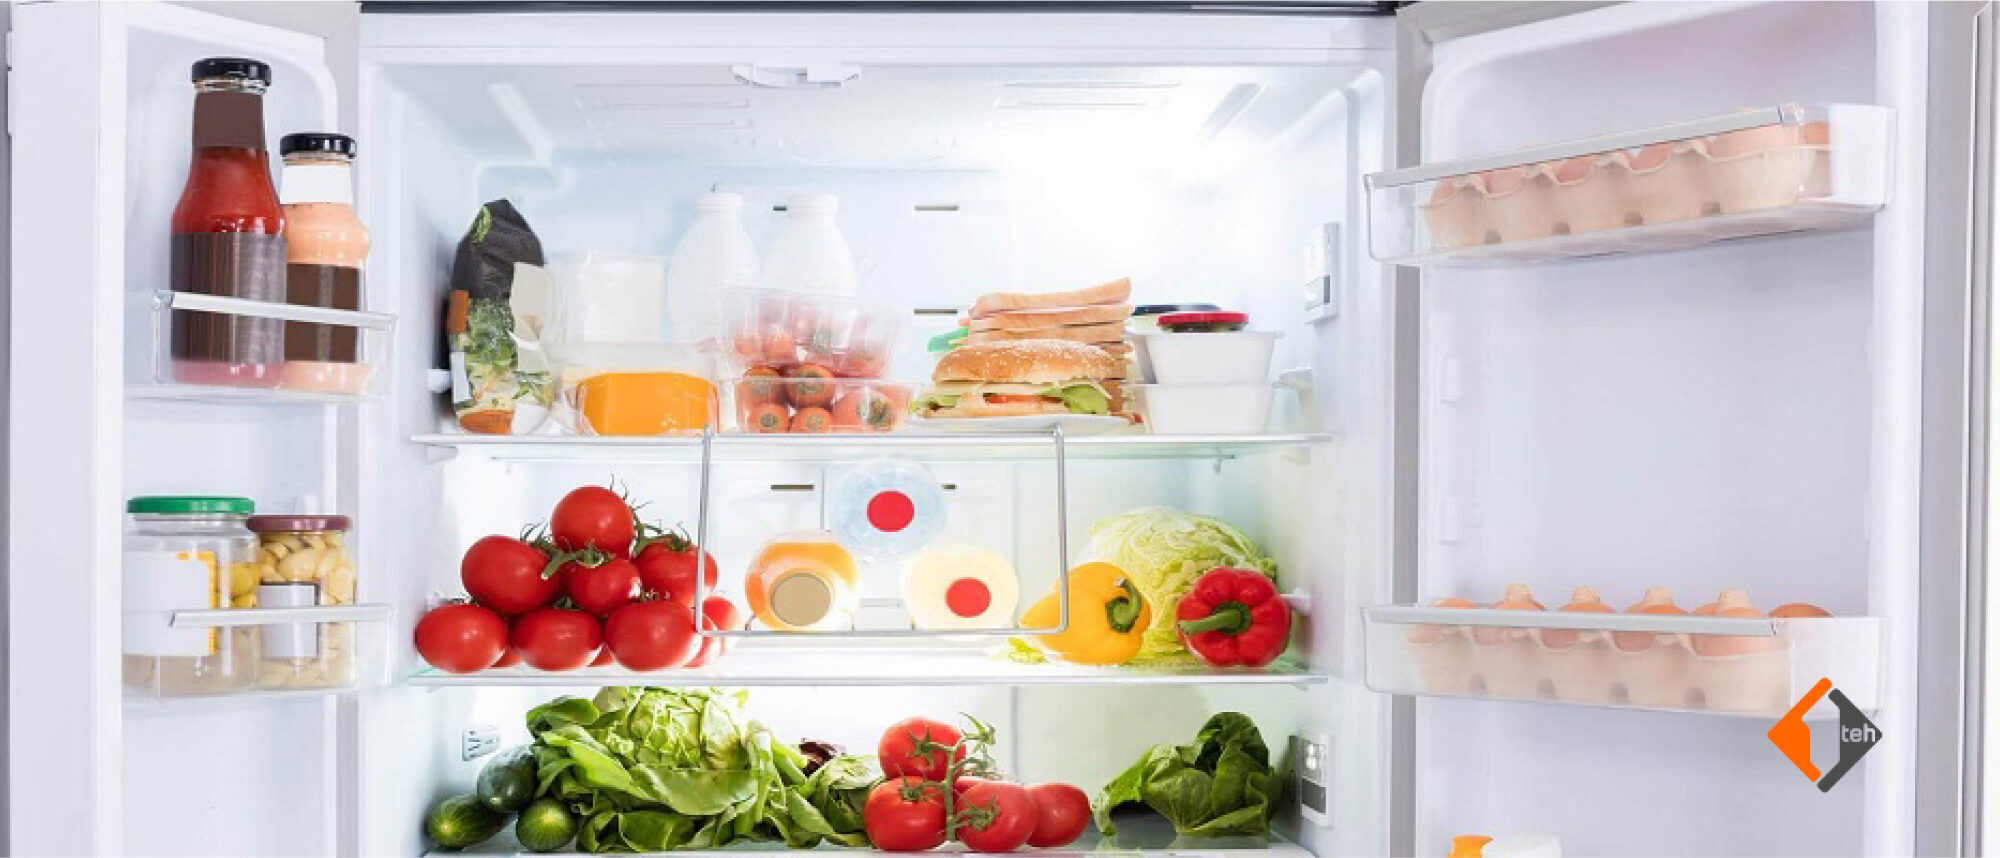 Новые холодильники Hotpoint с функцией быстрой заморозки